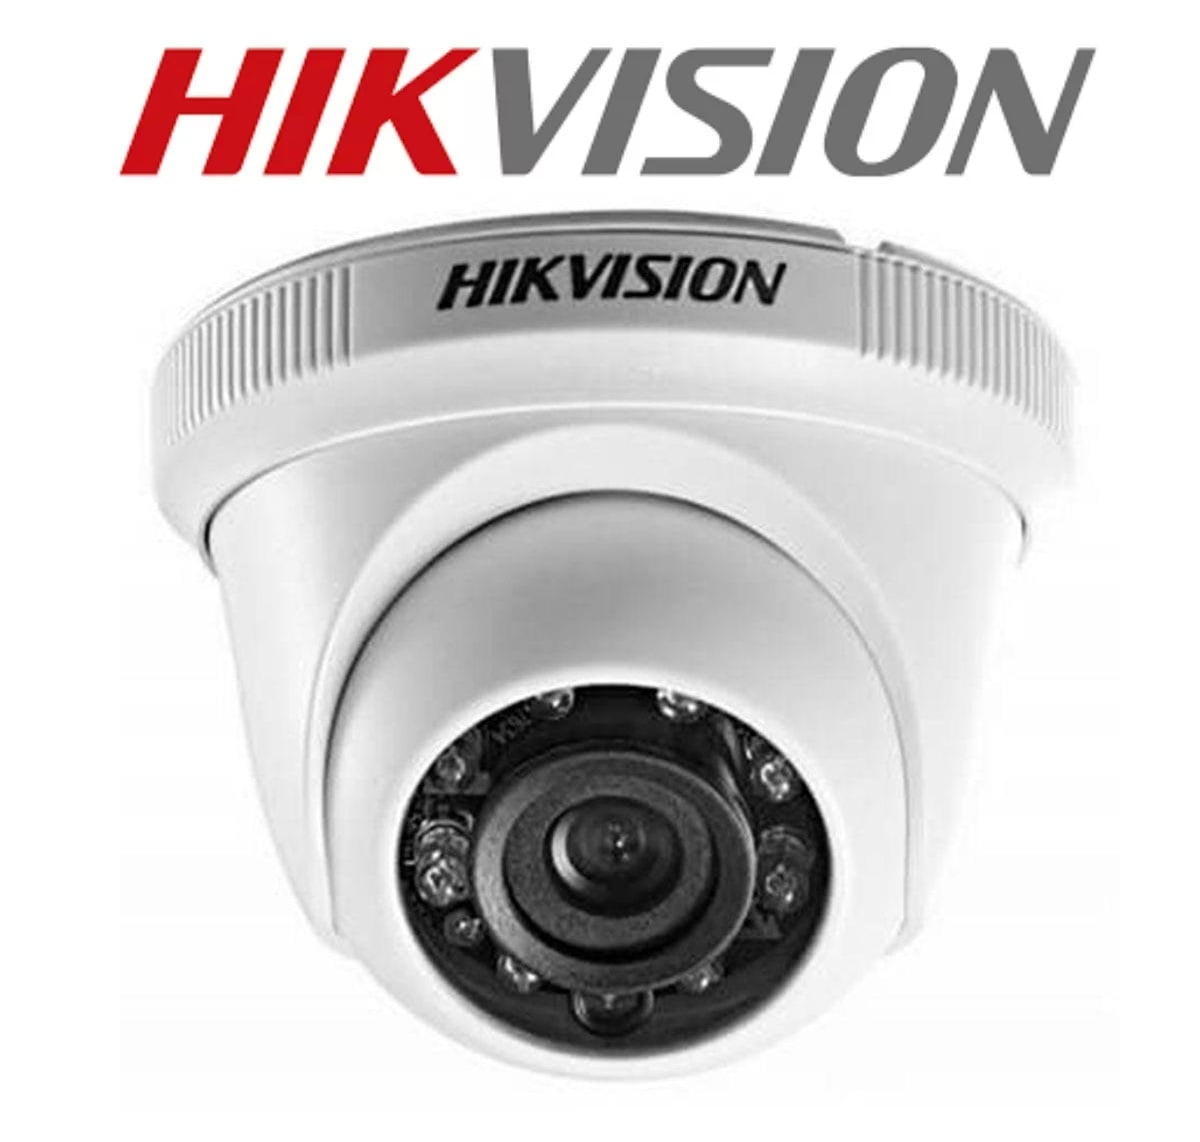 Camera de segurança Hikvision Ds-2ce56c0t-irmf infra vermelho